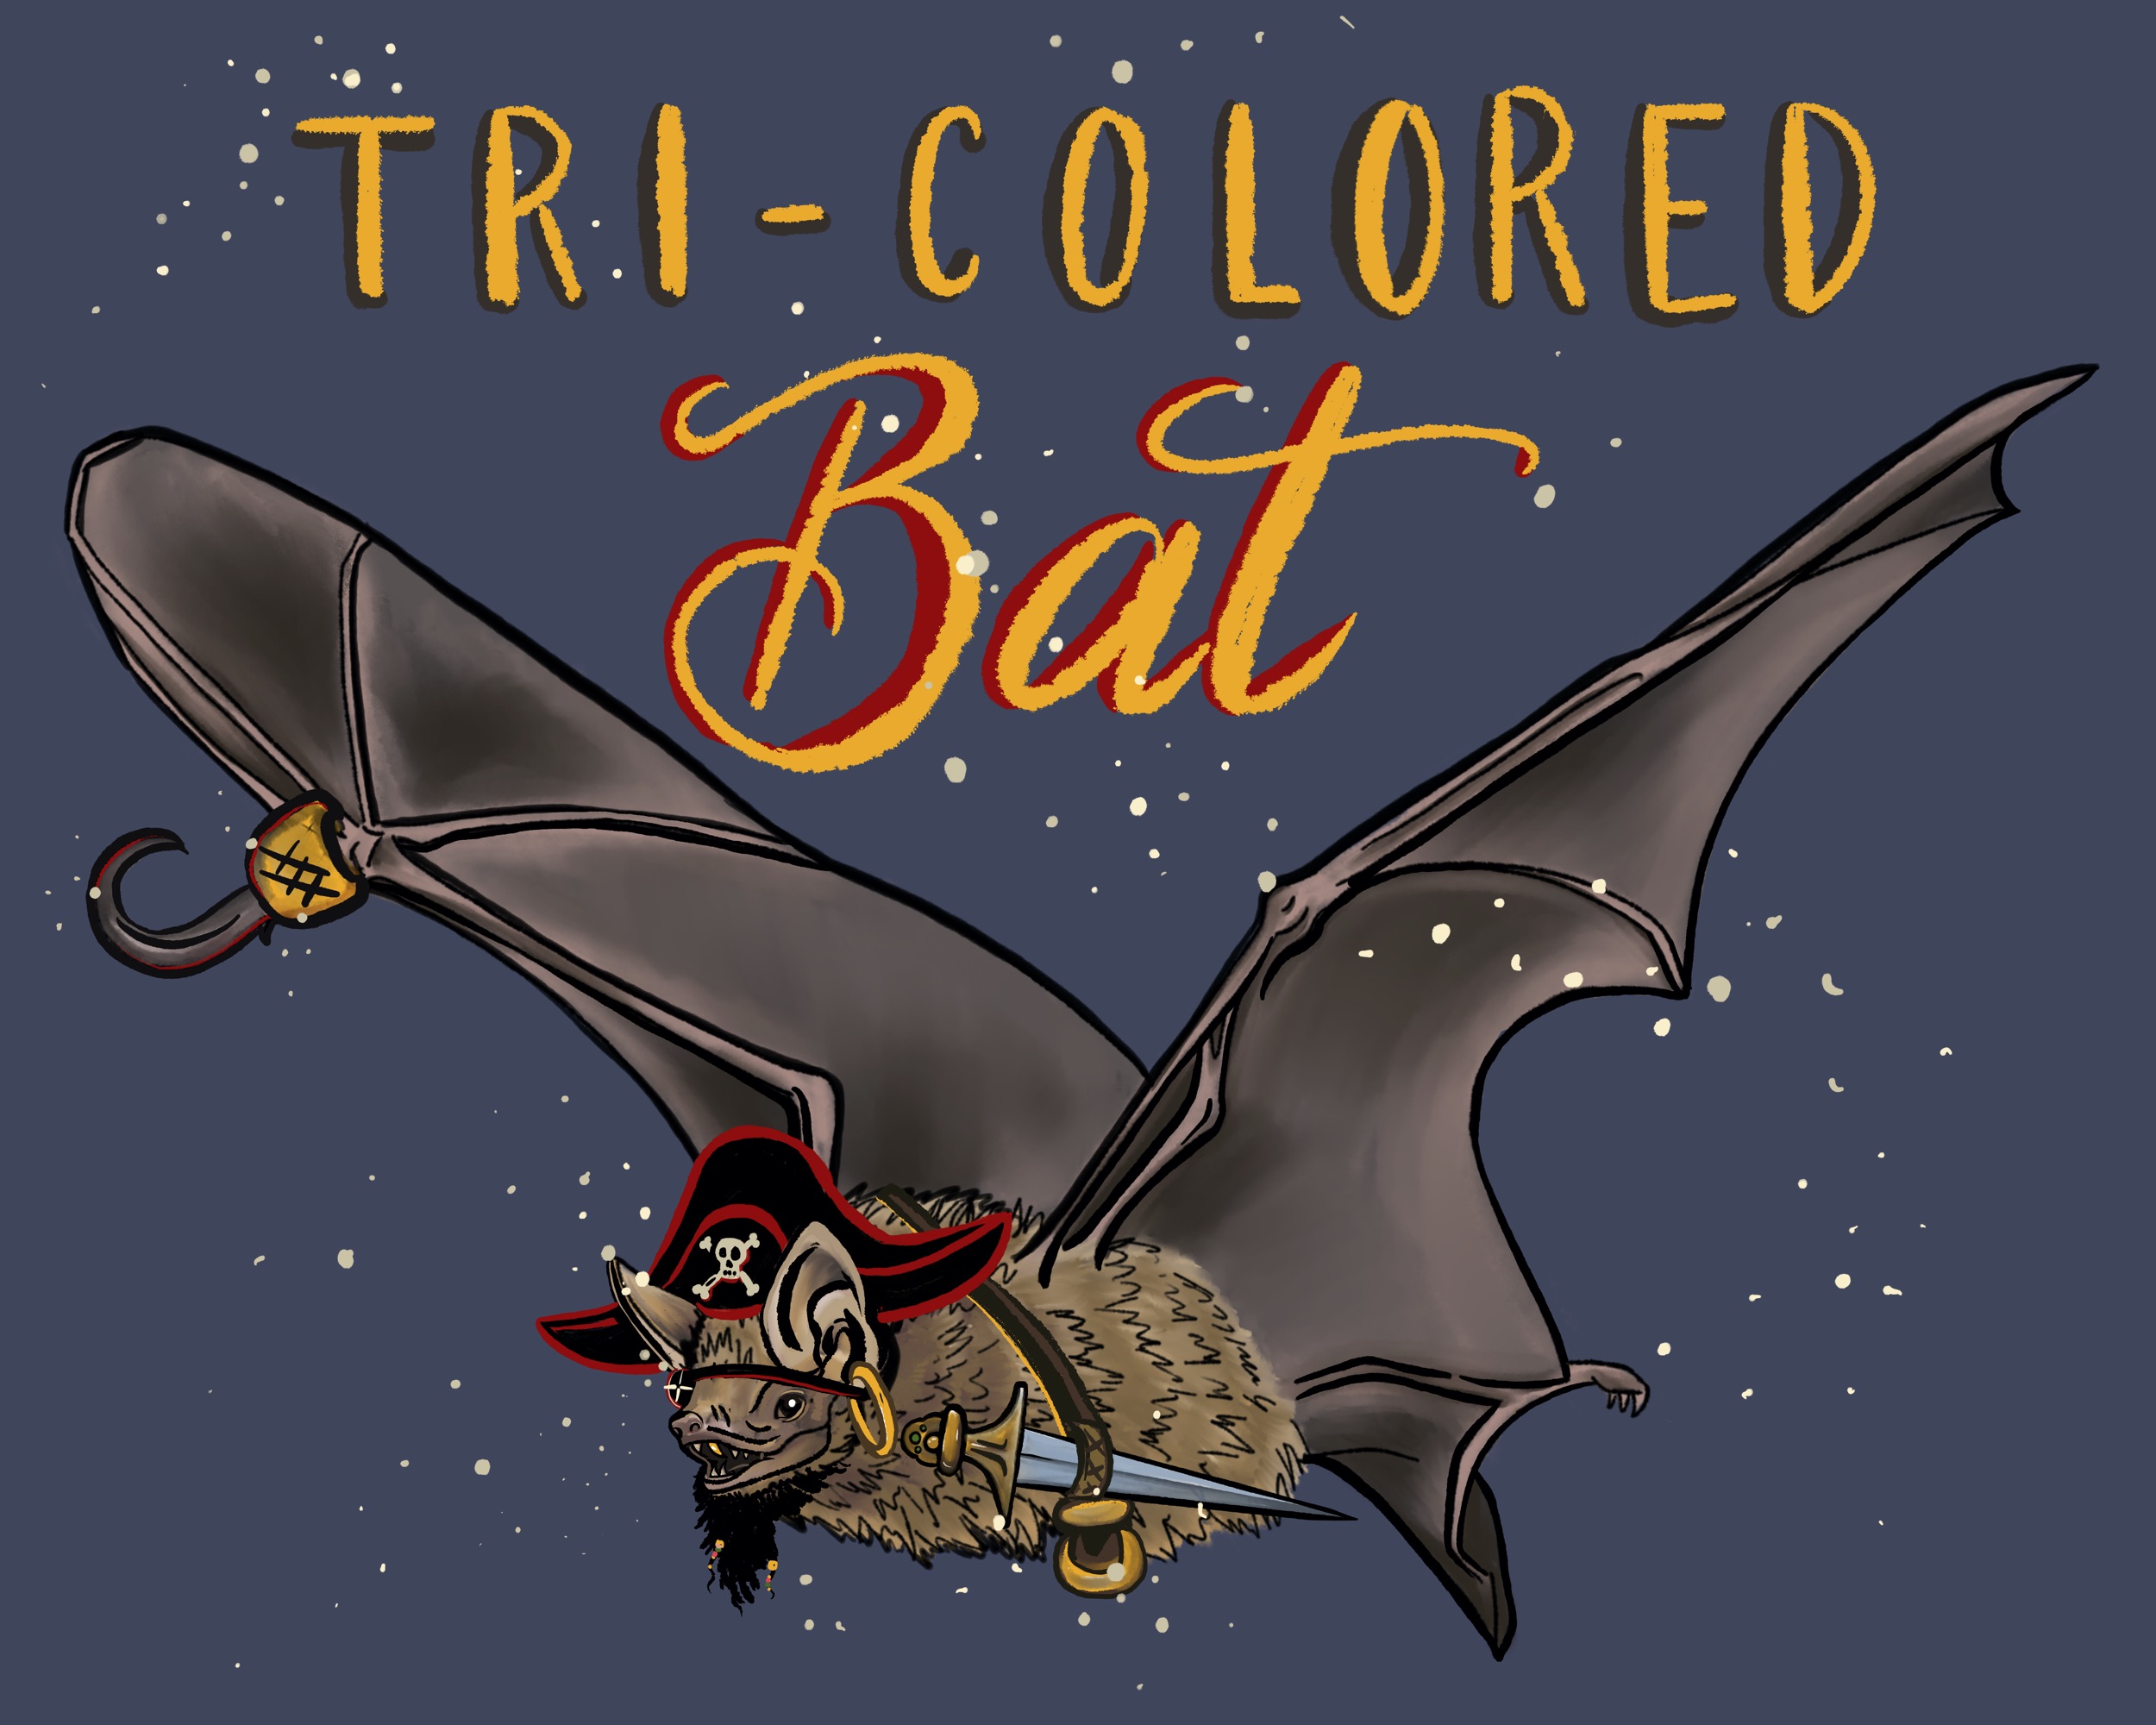 Tri colored bat